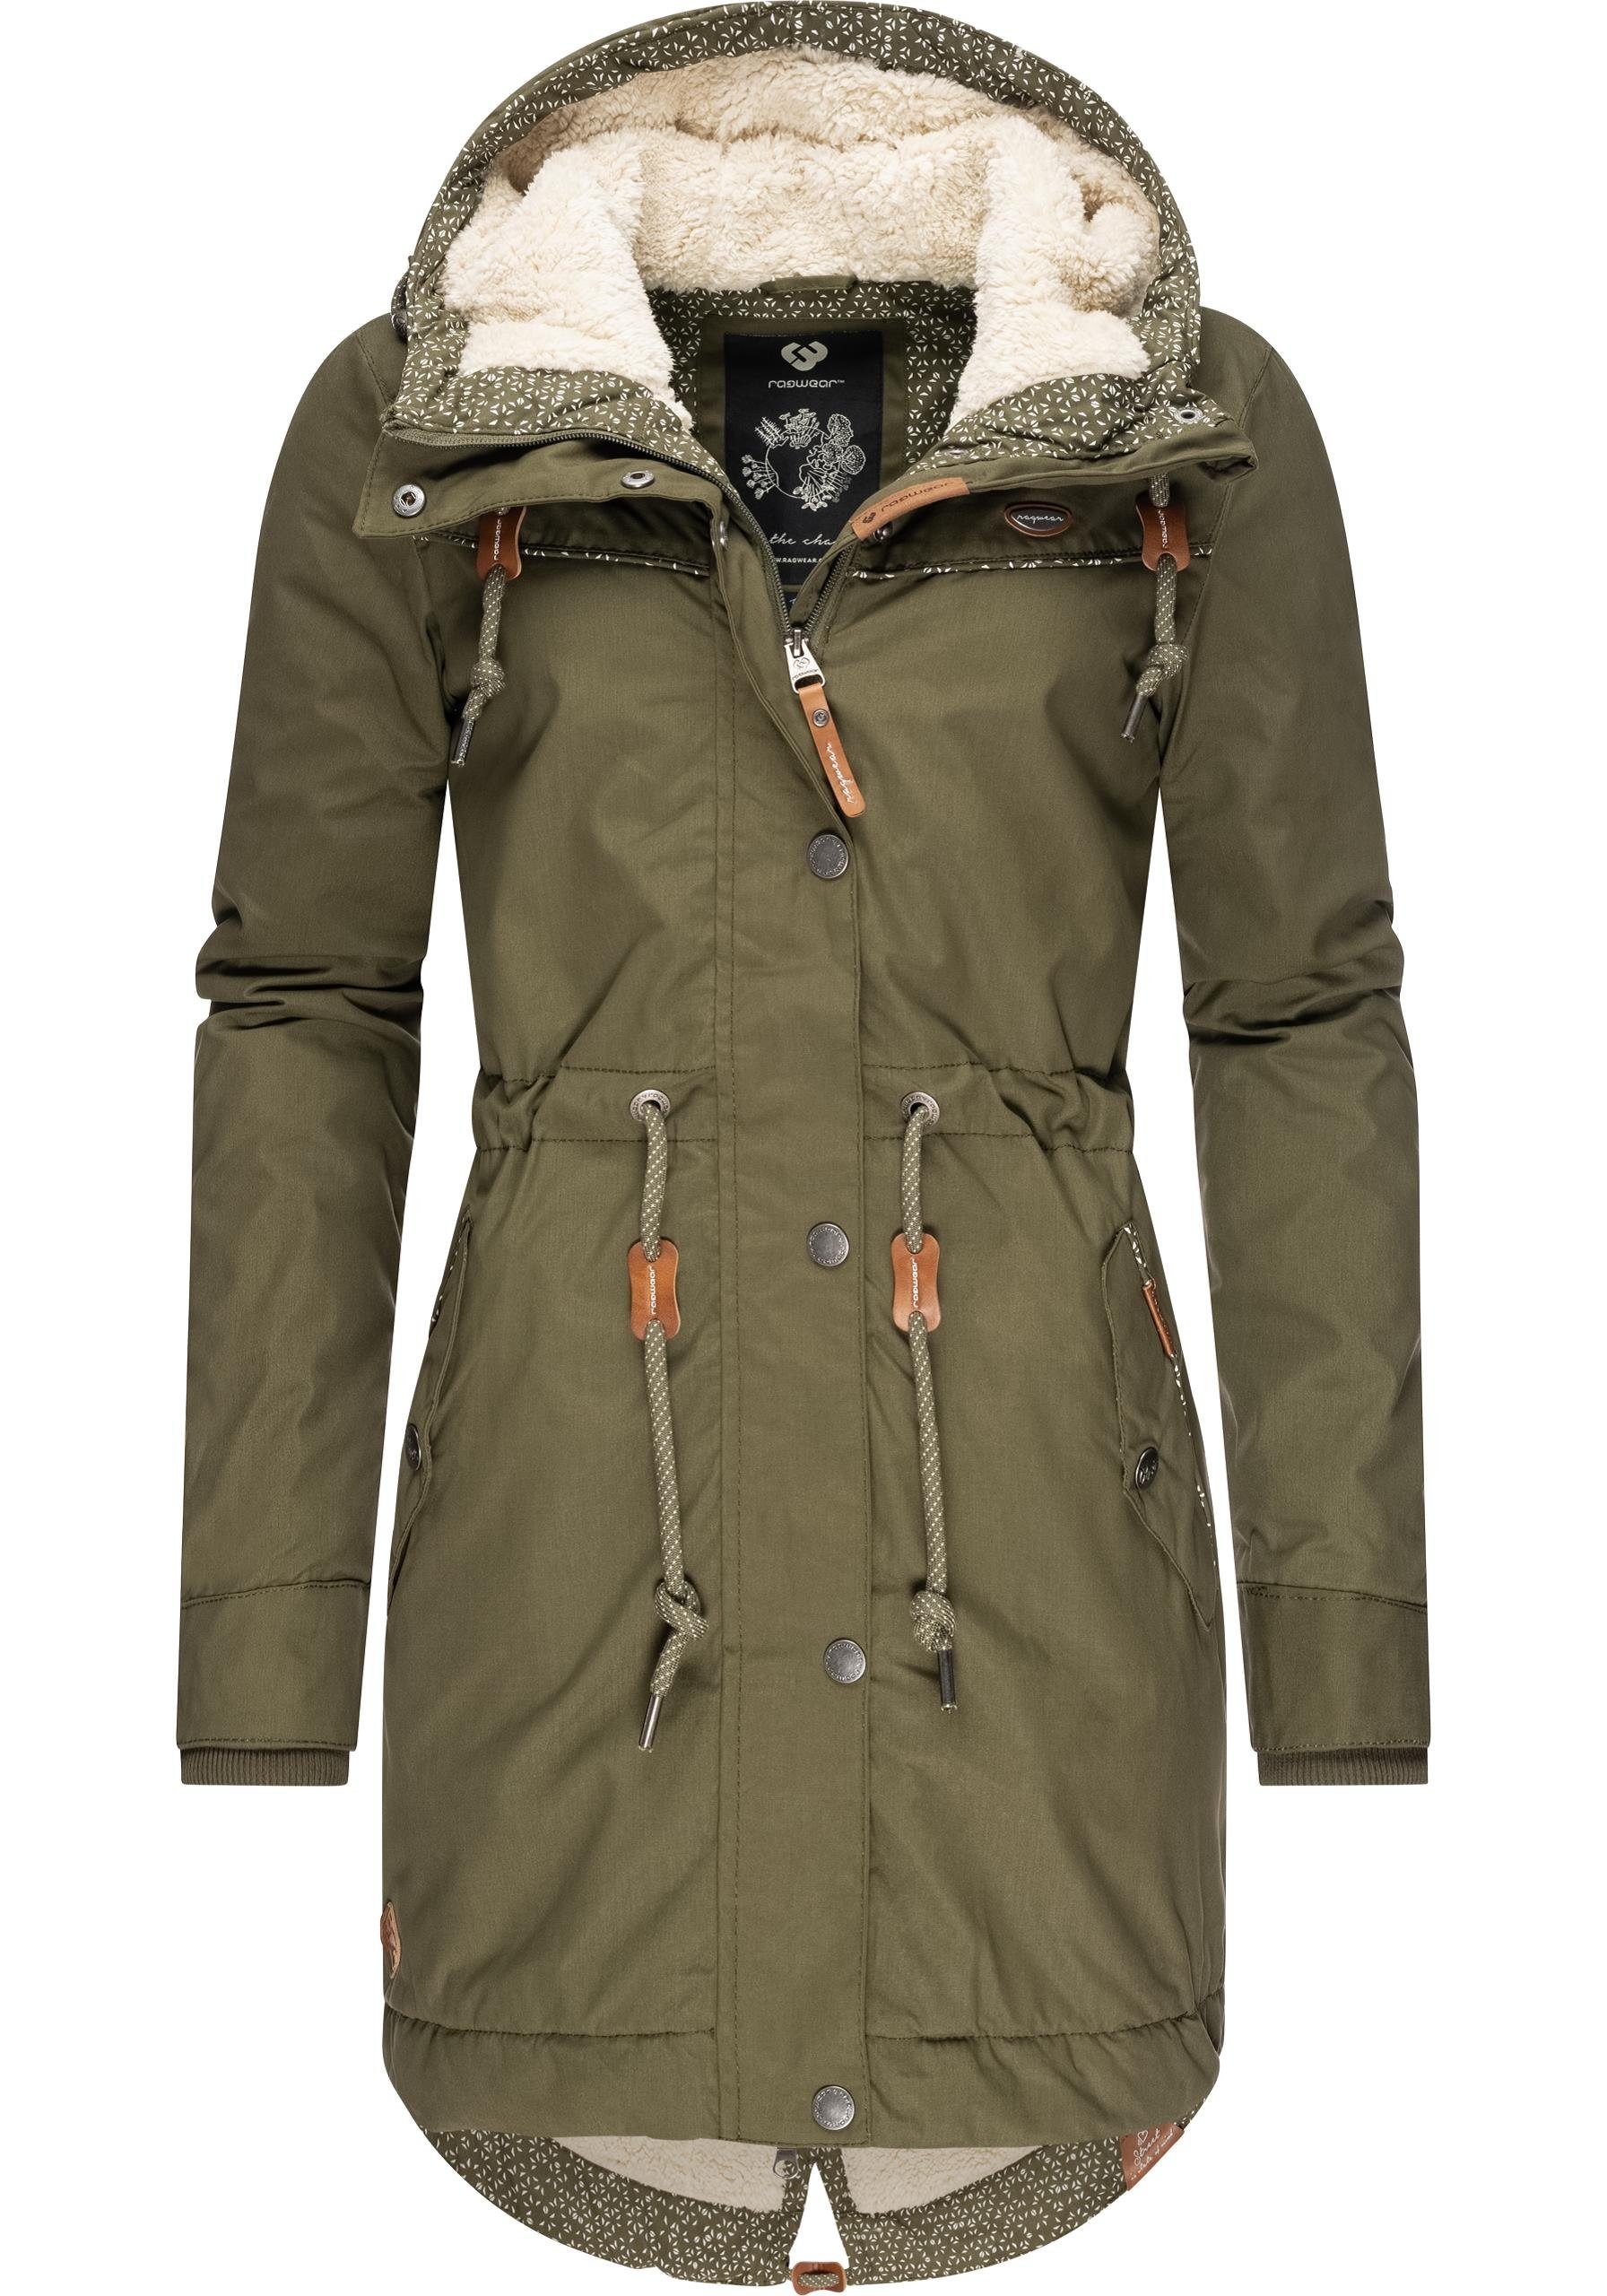 Winterjacken für Damen » Dicke Jacken | OTTO